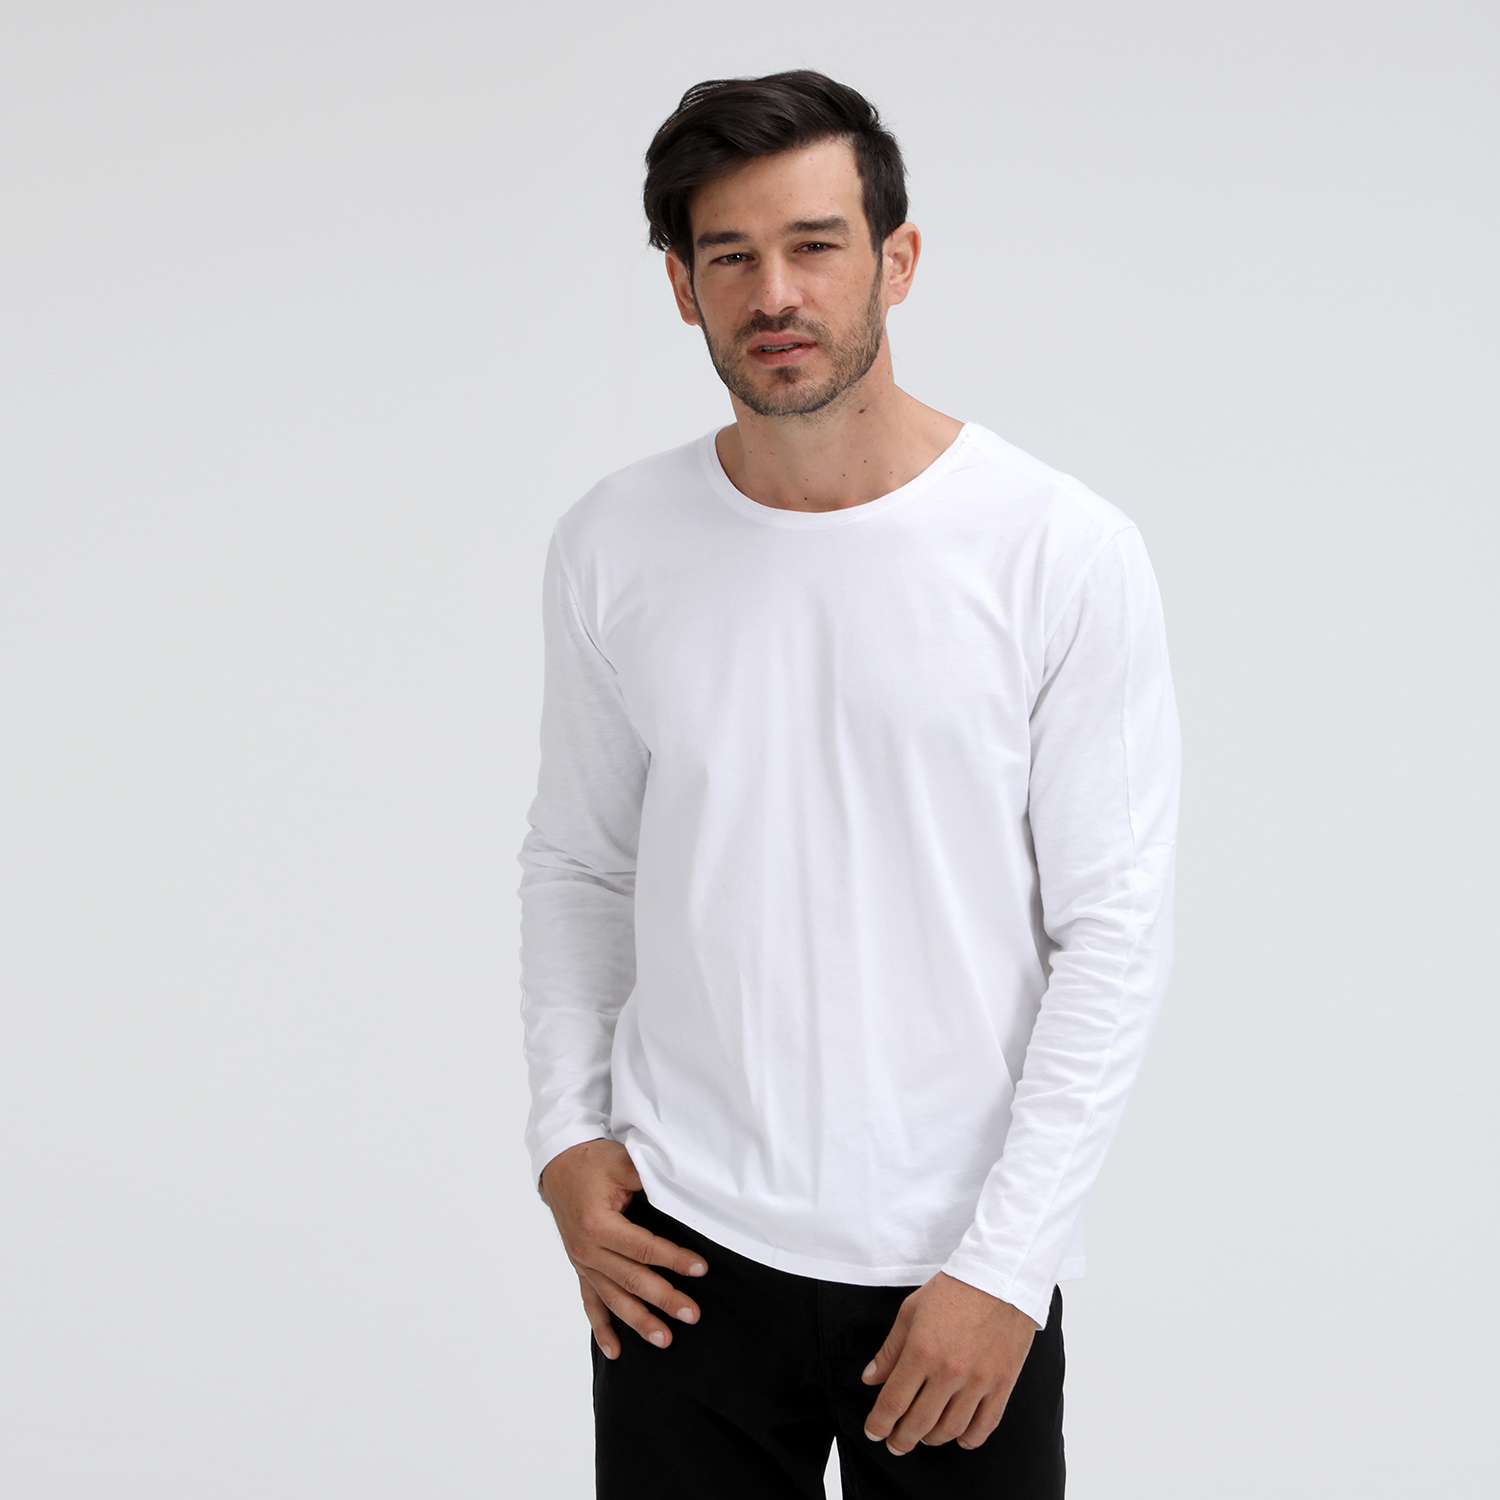 Ανδρικά/Ρούχα/Μπλούζες/Μακρυμάνικες DIRTY LAUNDRY - Ανδρική μπλούζα DIRTY LAUNDRY DESIGNED SLUB JERSEY COTTON L/ λευκή